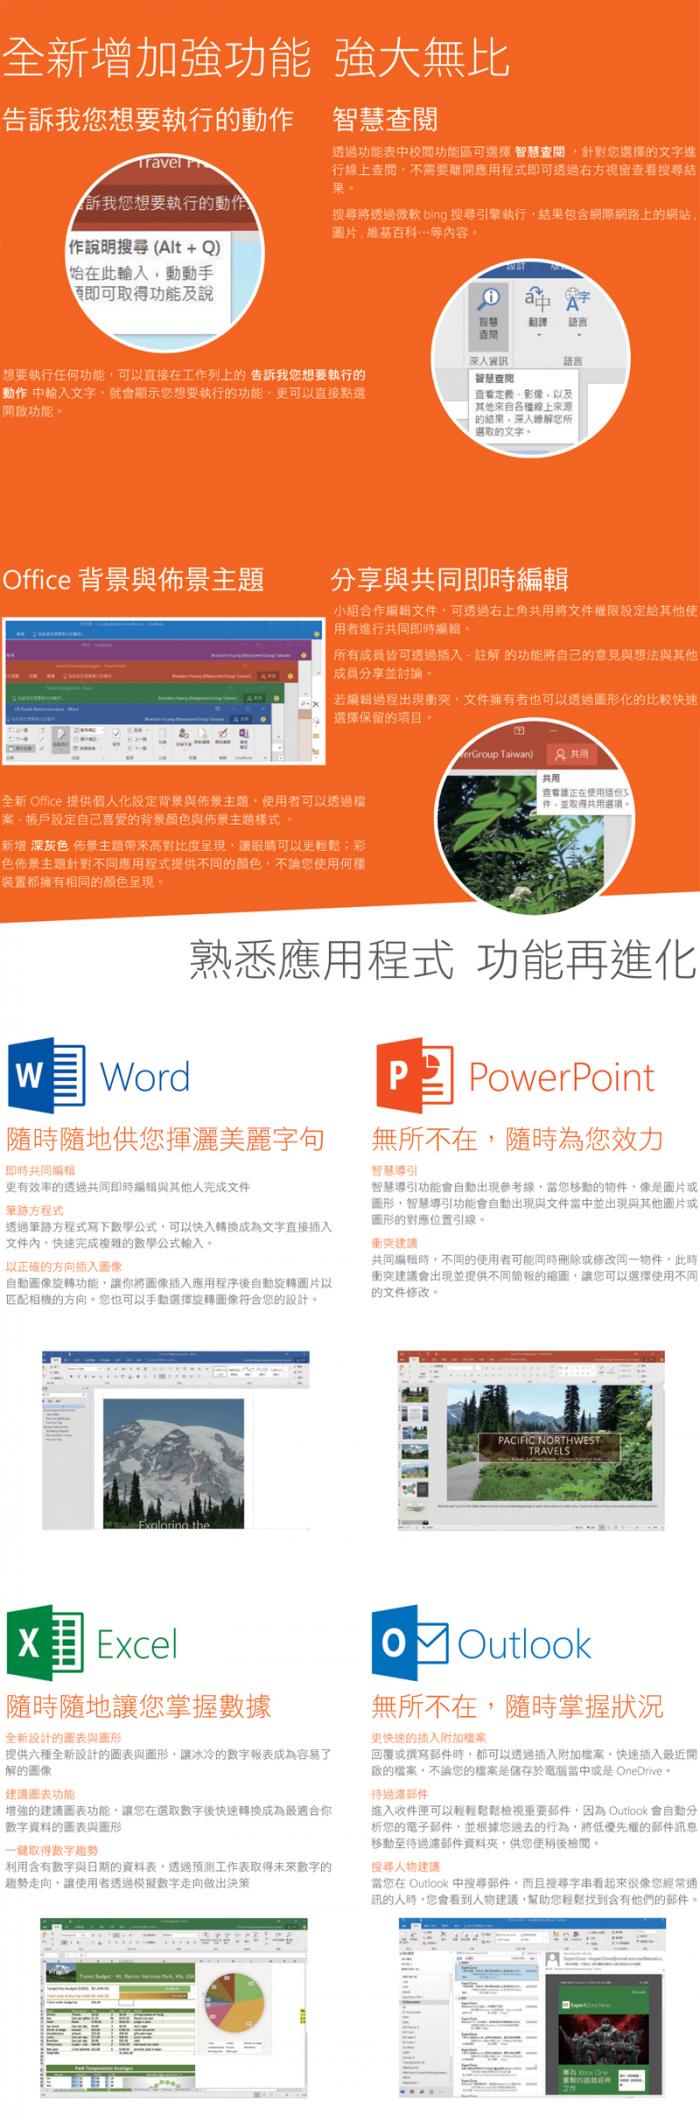 Office365 中文 個人版 搭機省200